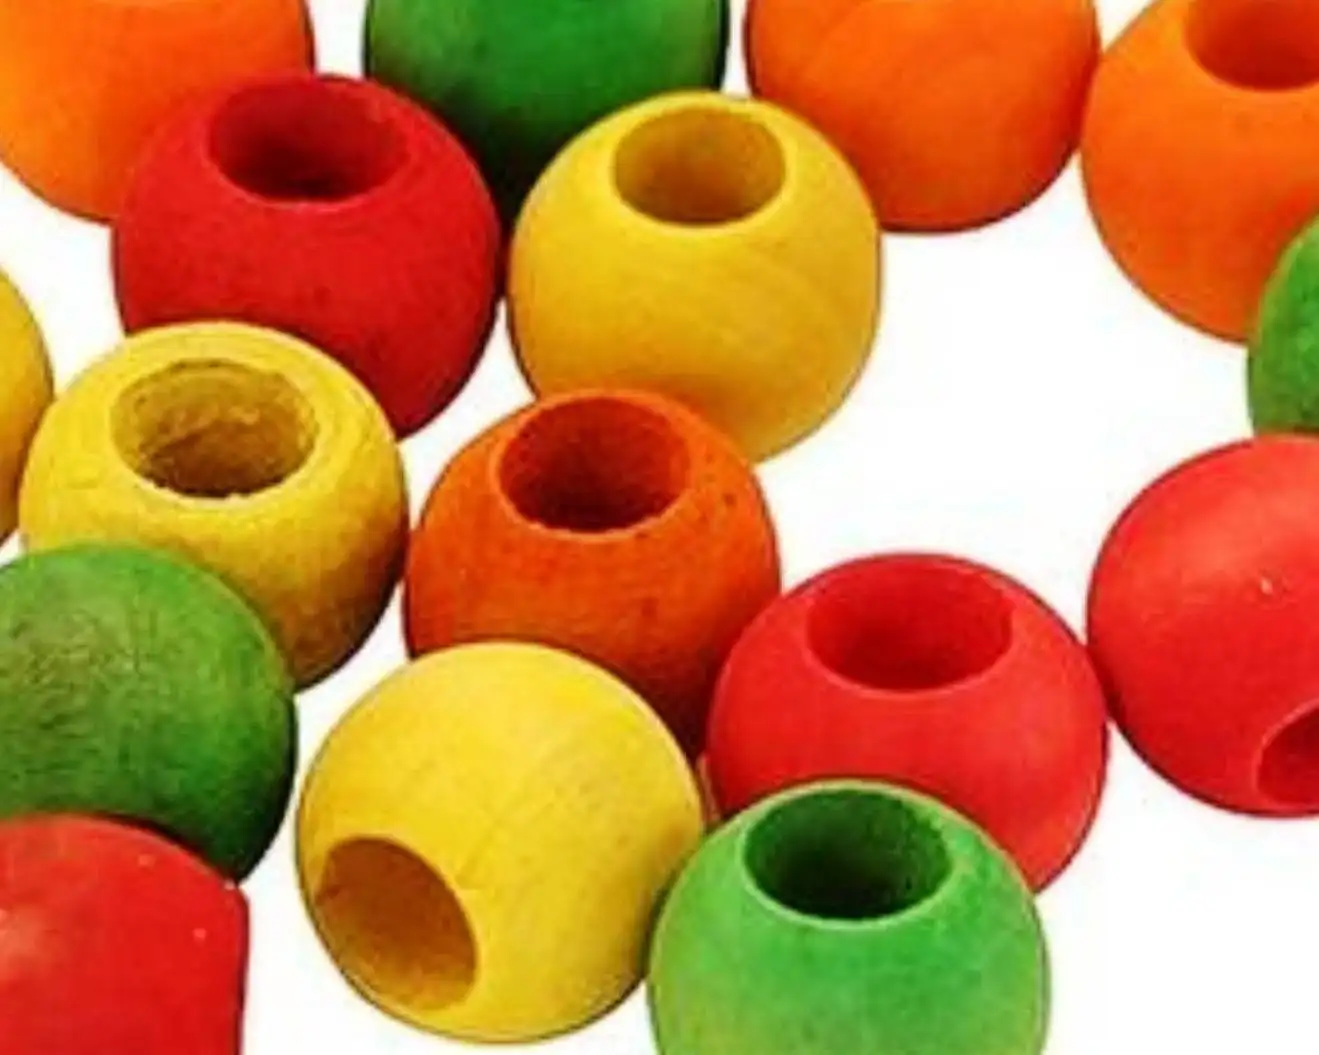 חרוזי עץ צבעוניים בטוח לציפורים עץ לתוכים צעצועי תוכי חרוזי עץ בצורת צבע מותאם אישית תוצרת הודו